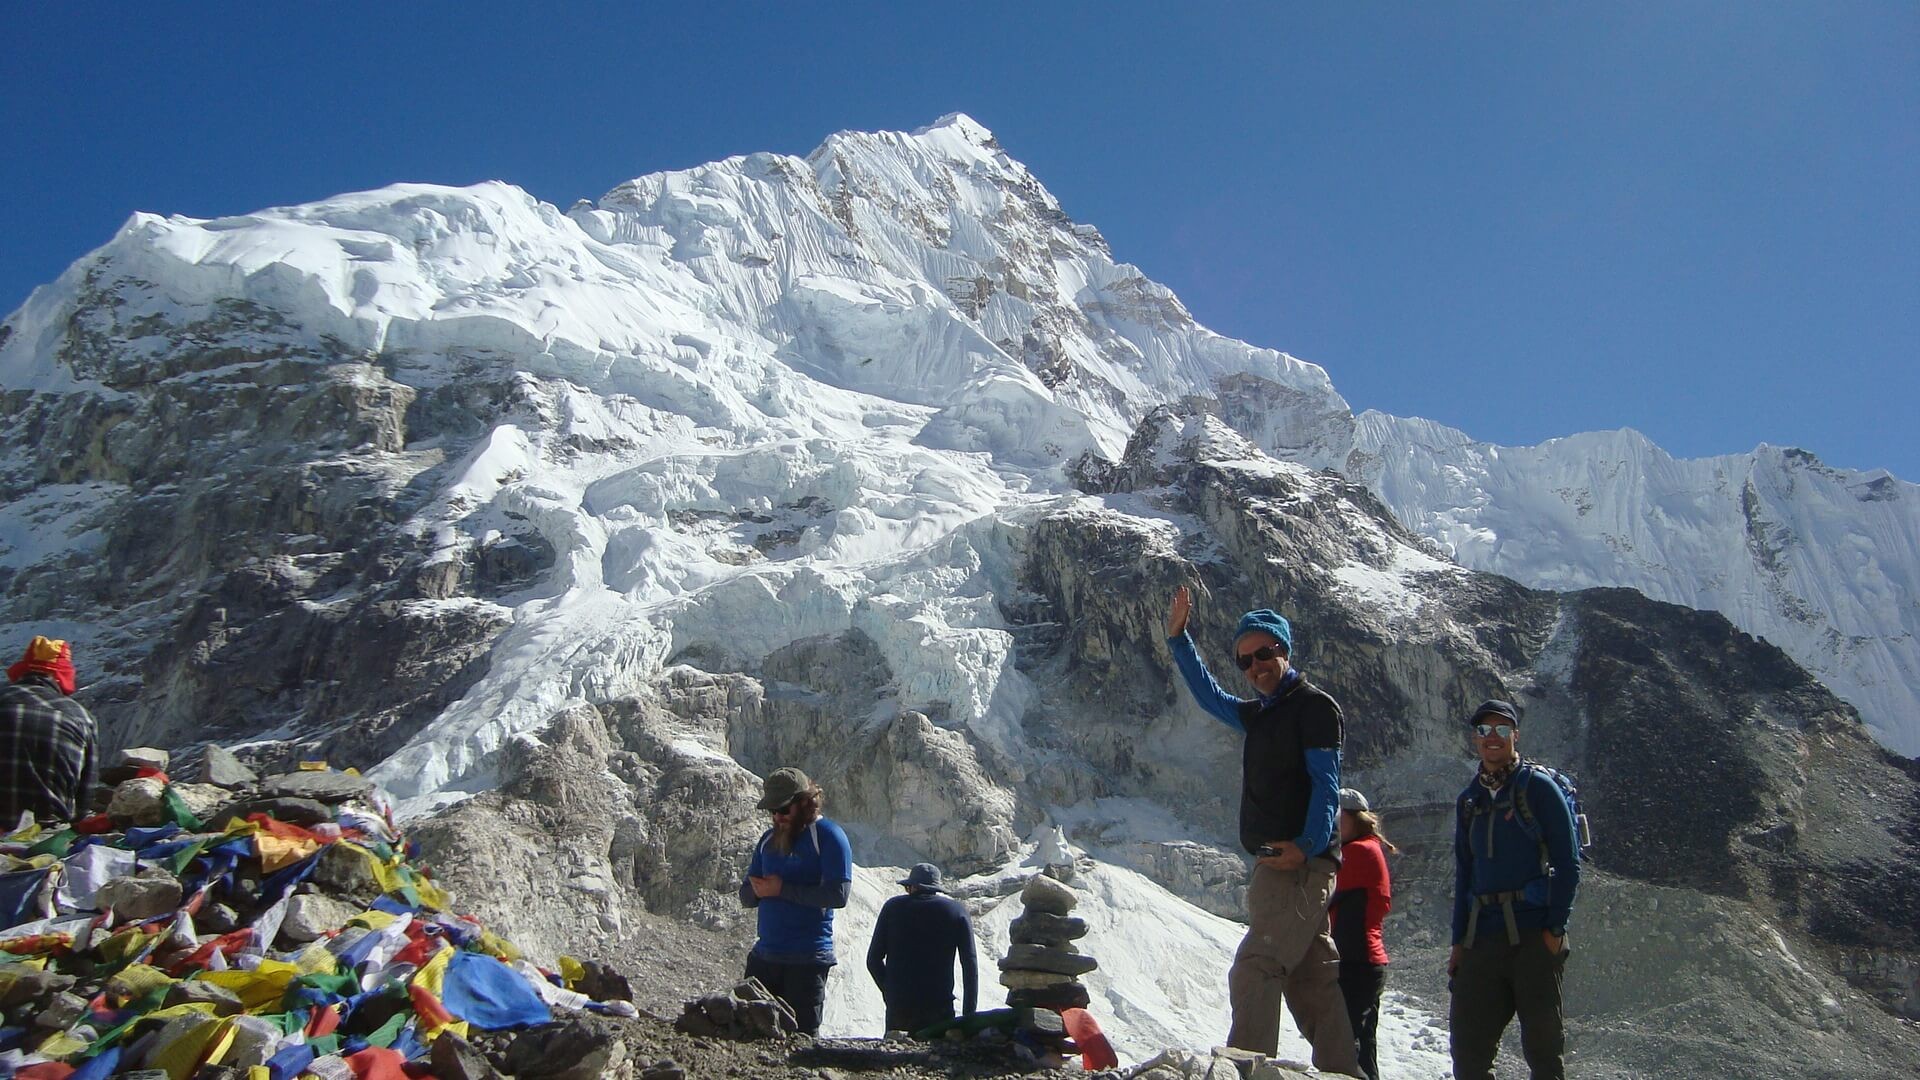 Everest Base Camp Trek Gallery bring you closer to Everest base camp 5,364m